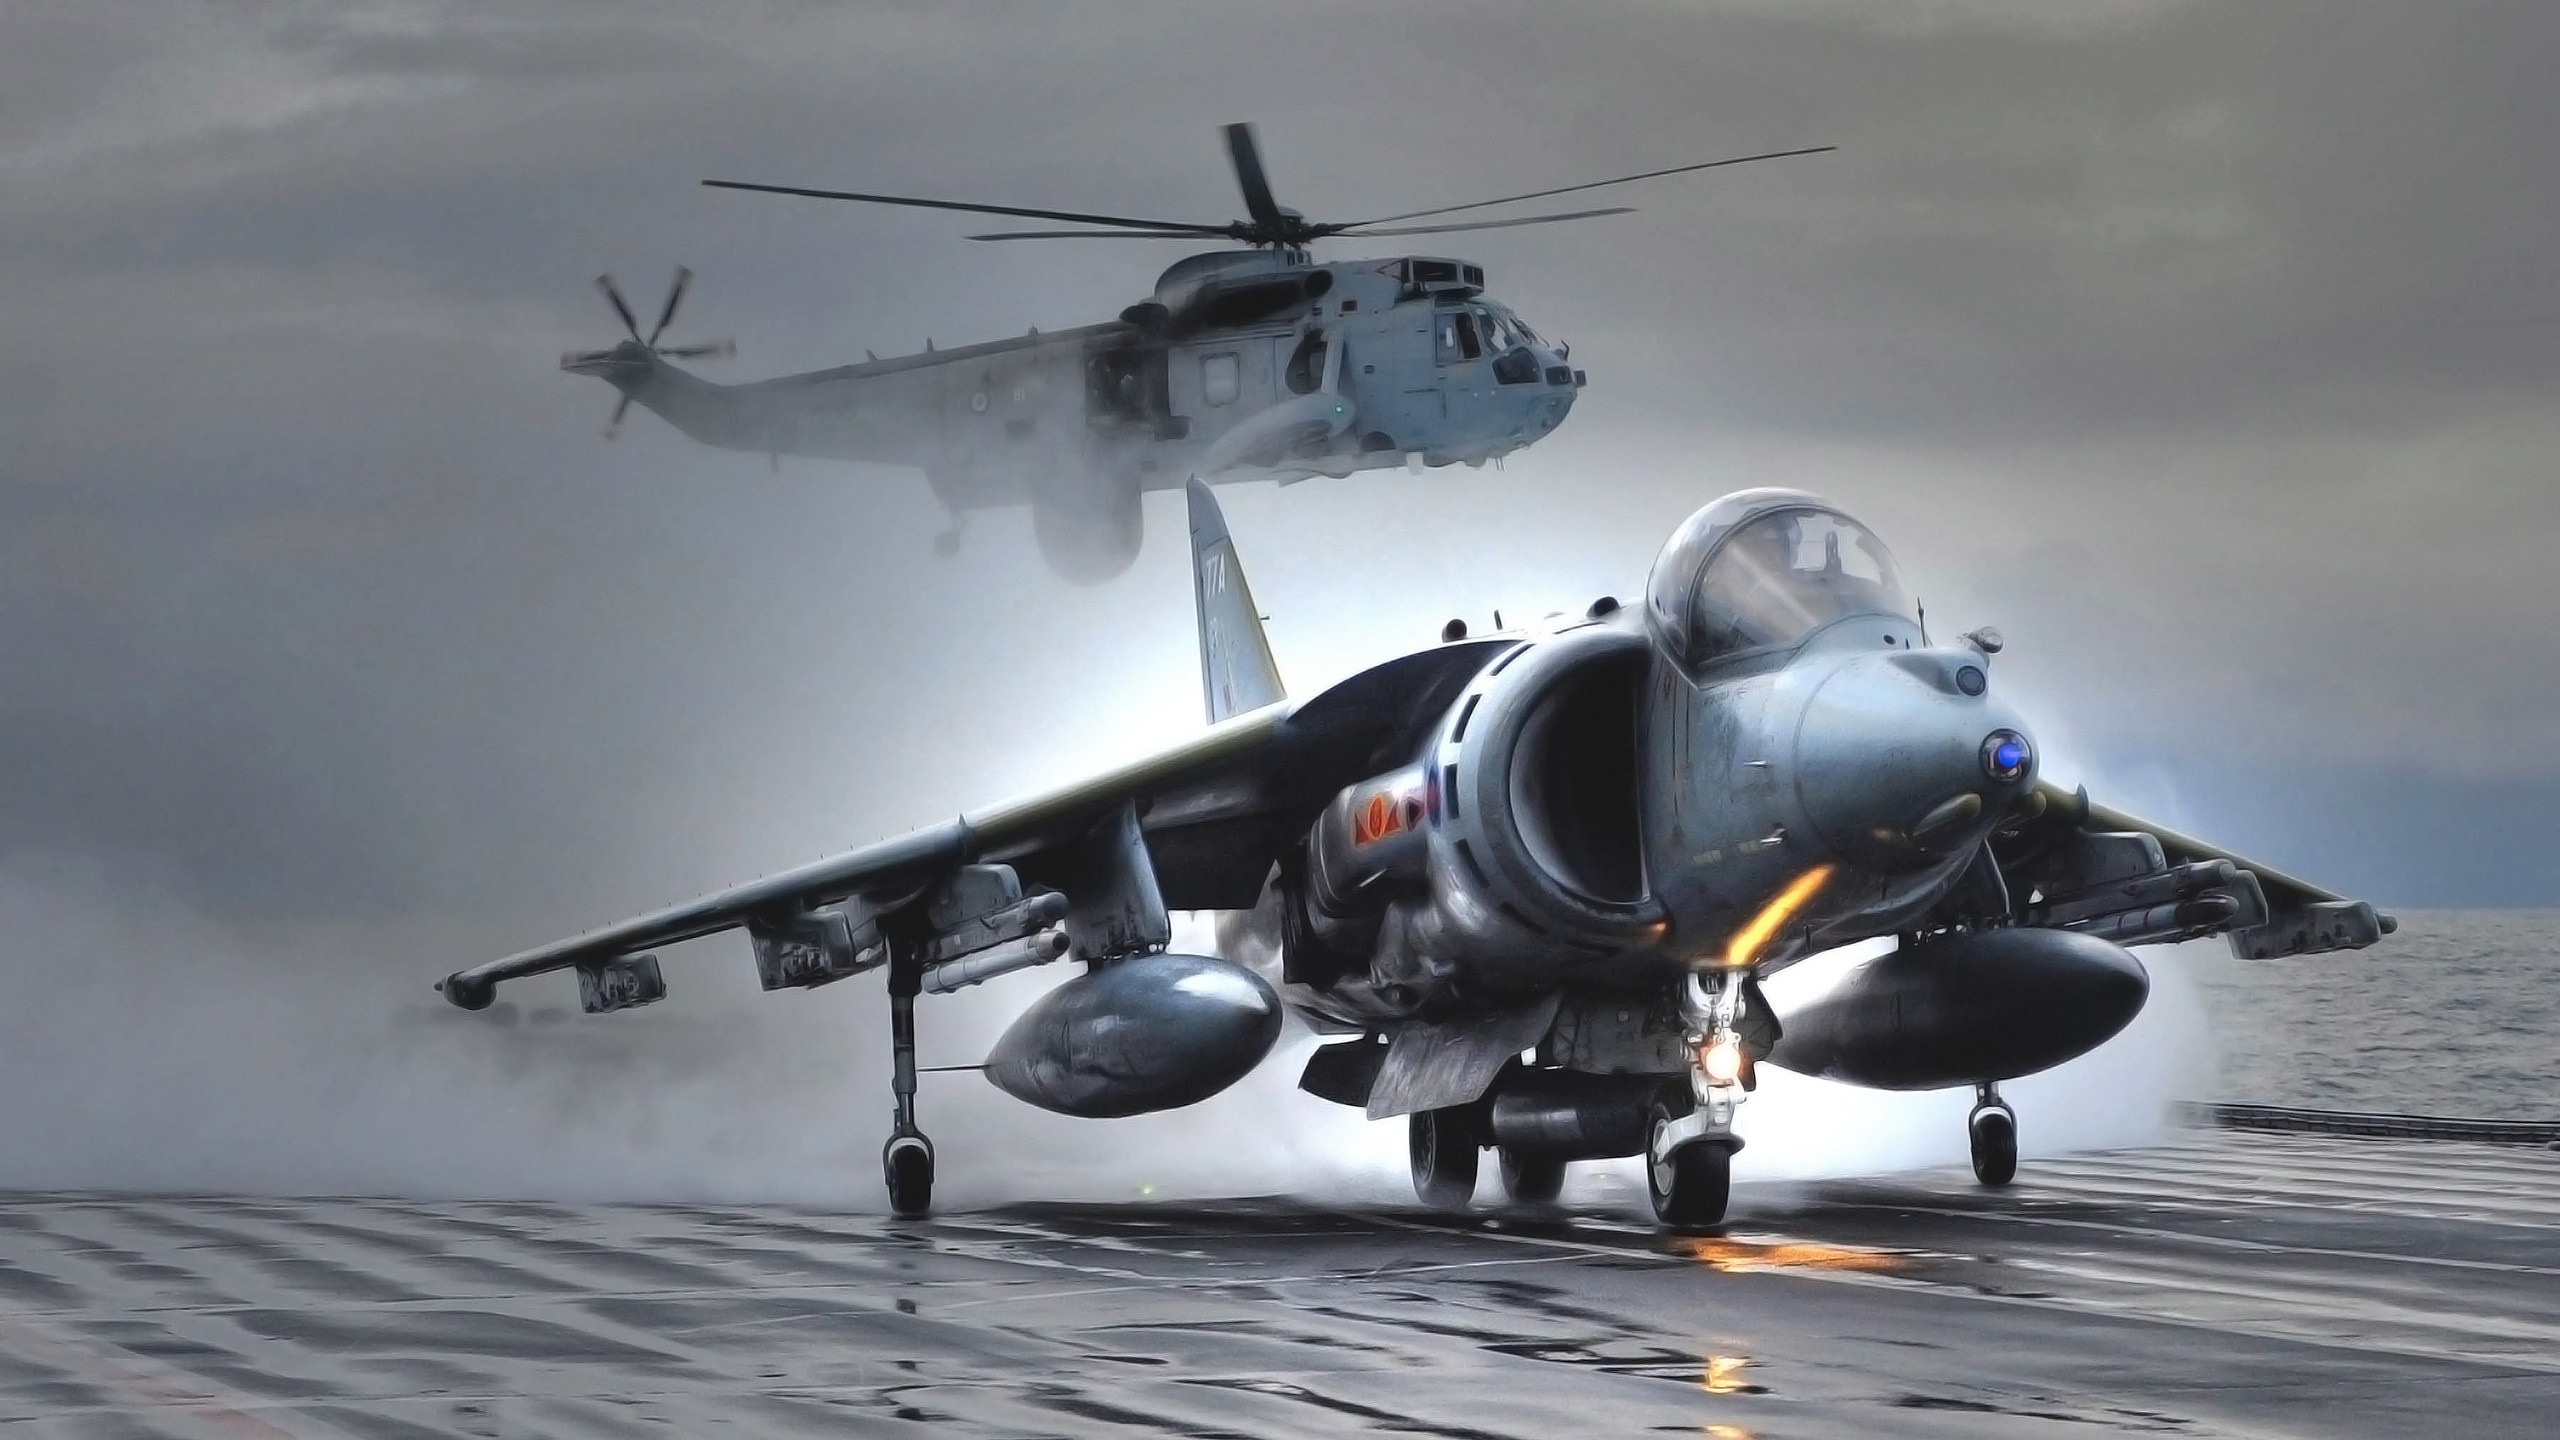 Harrier, AV 8B Harrier II, Royal Navy, Westland WS 61 Sea King AEW.2A Wallpaper